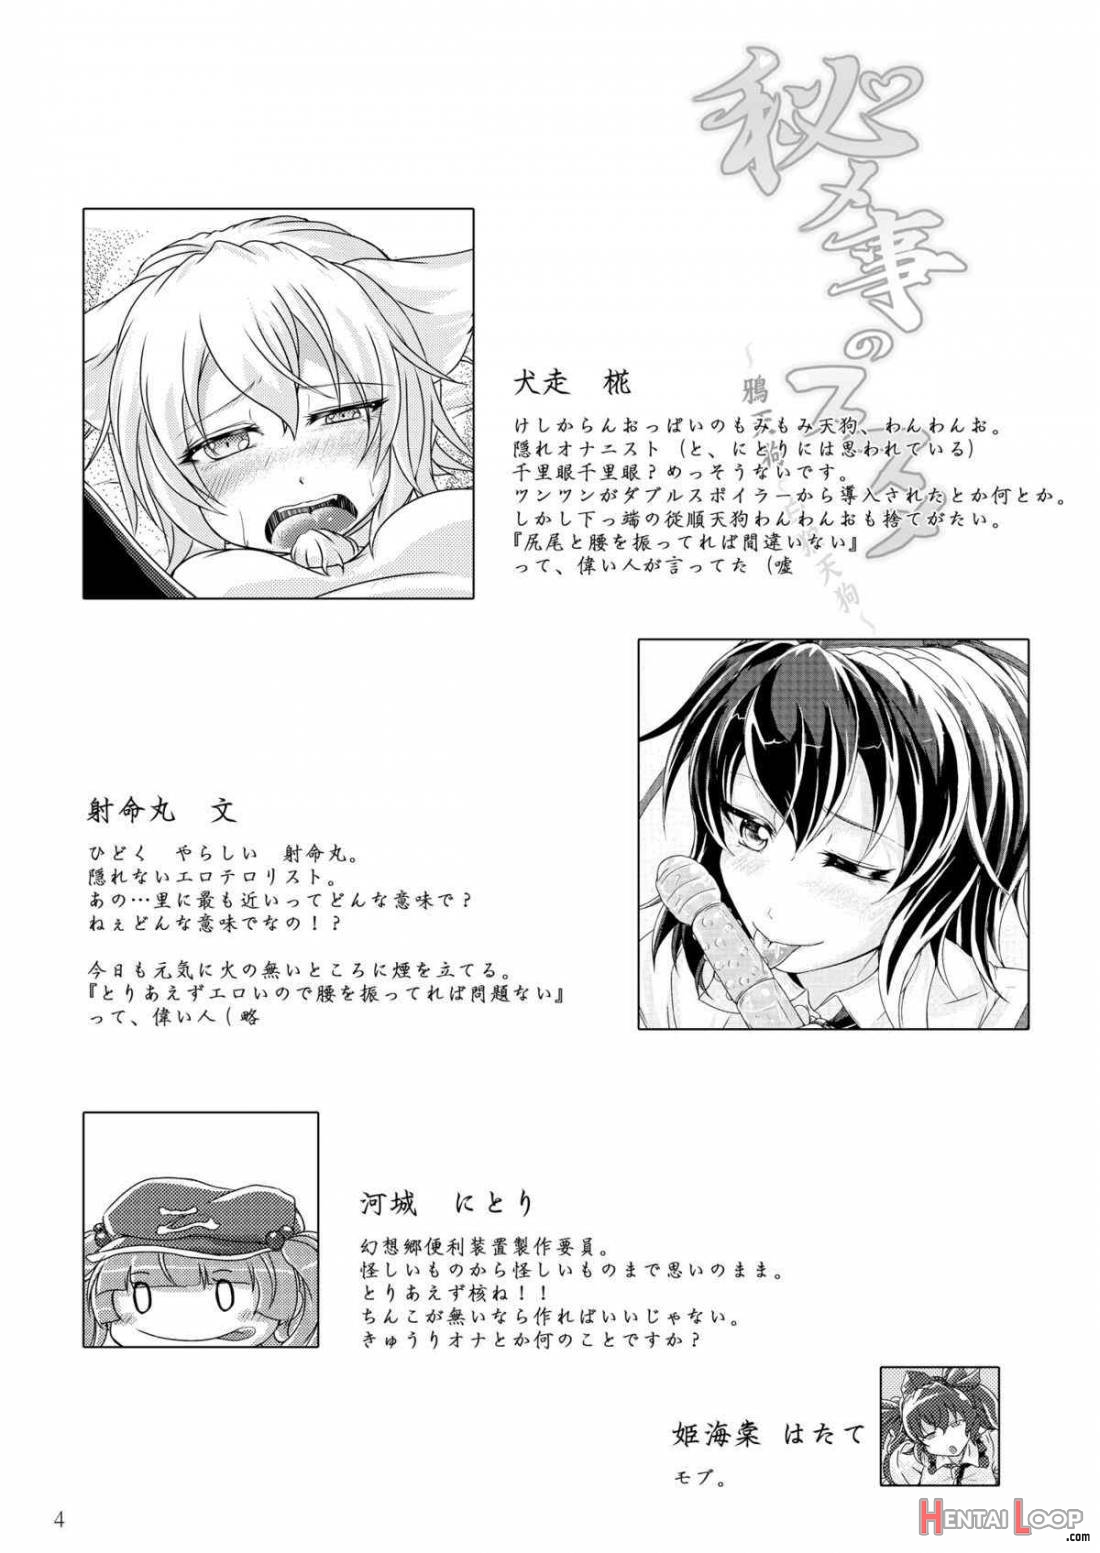 Himegoto no Susume page 2